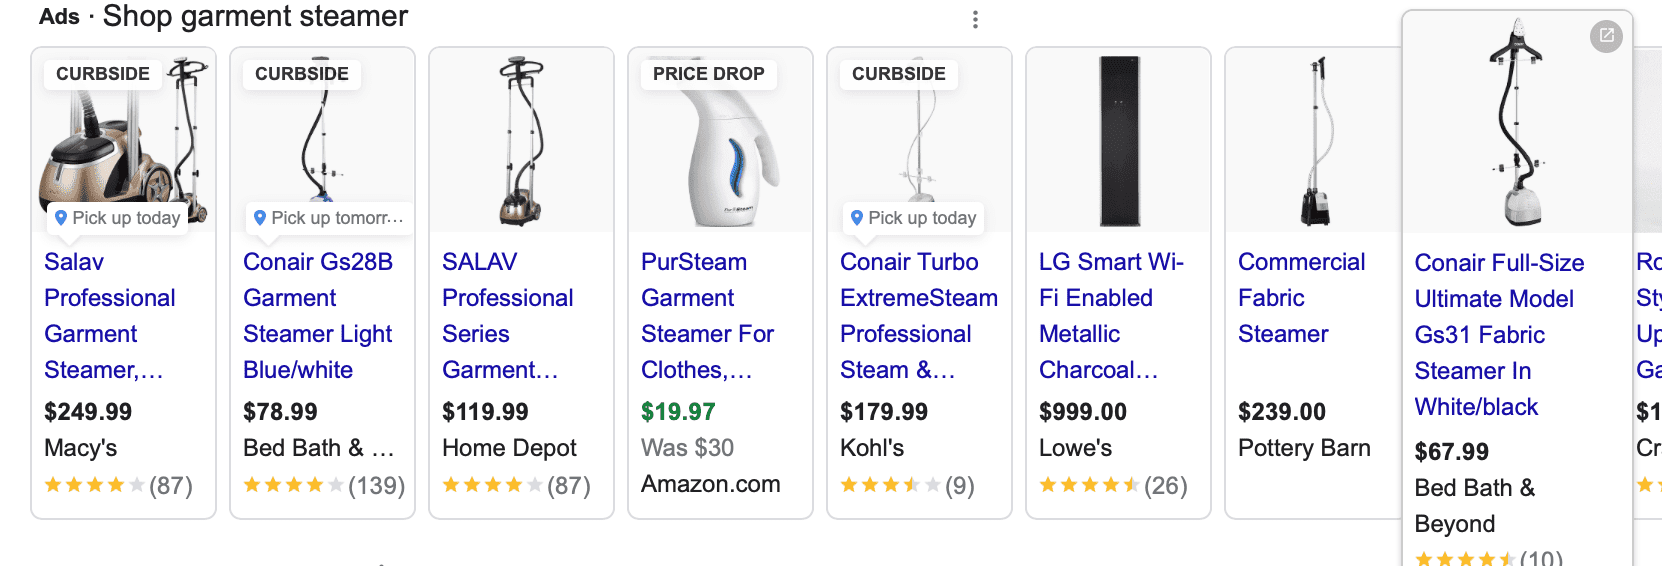 google shopping ads for garment steamer